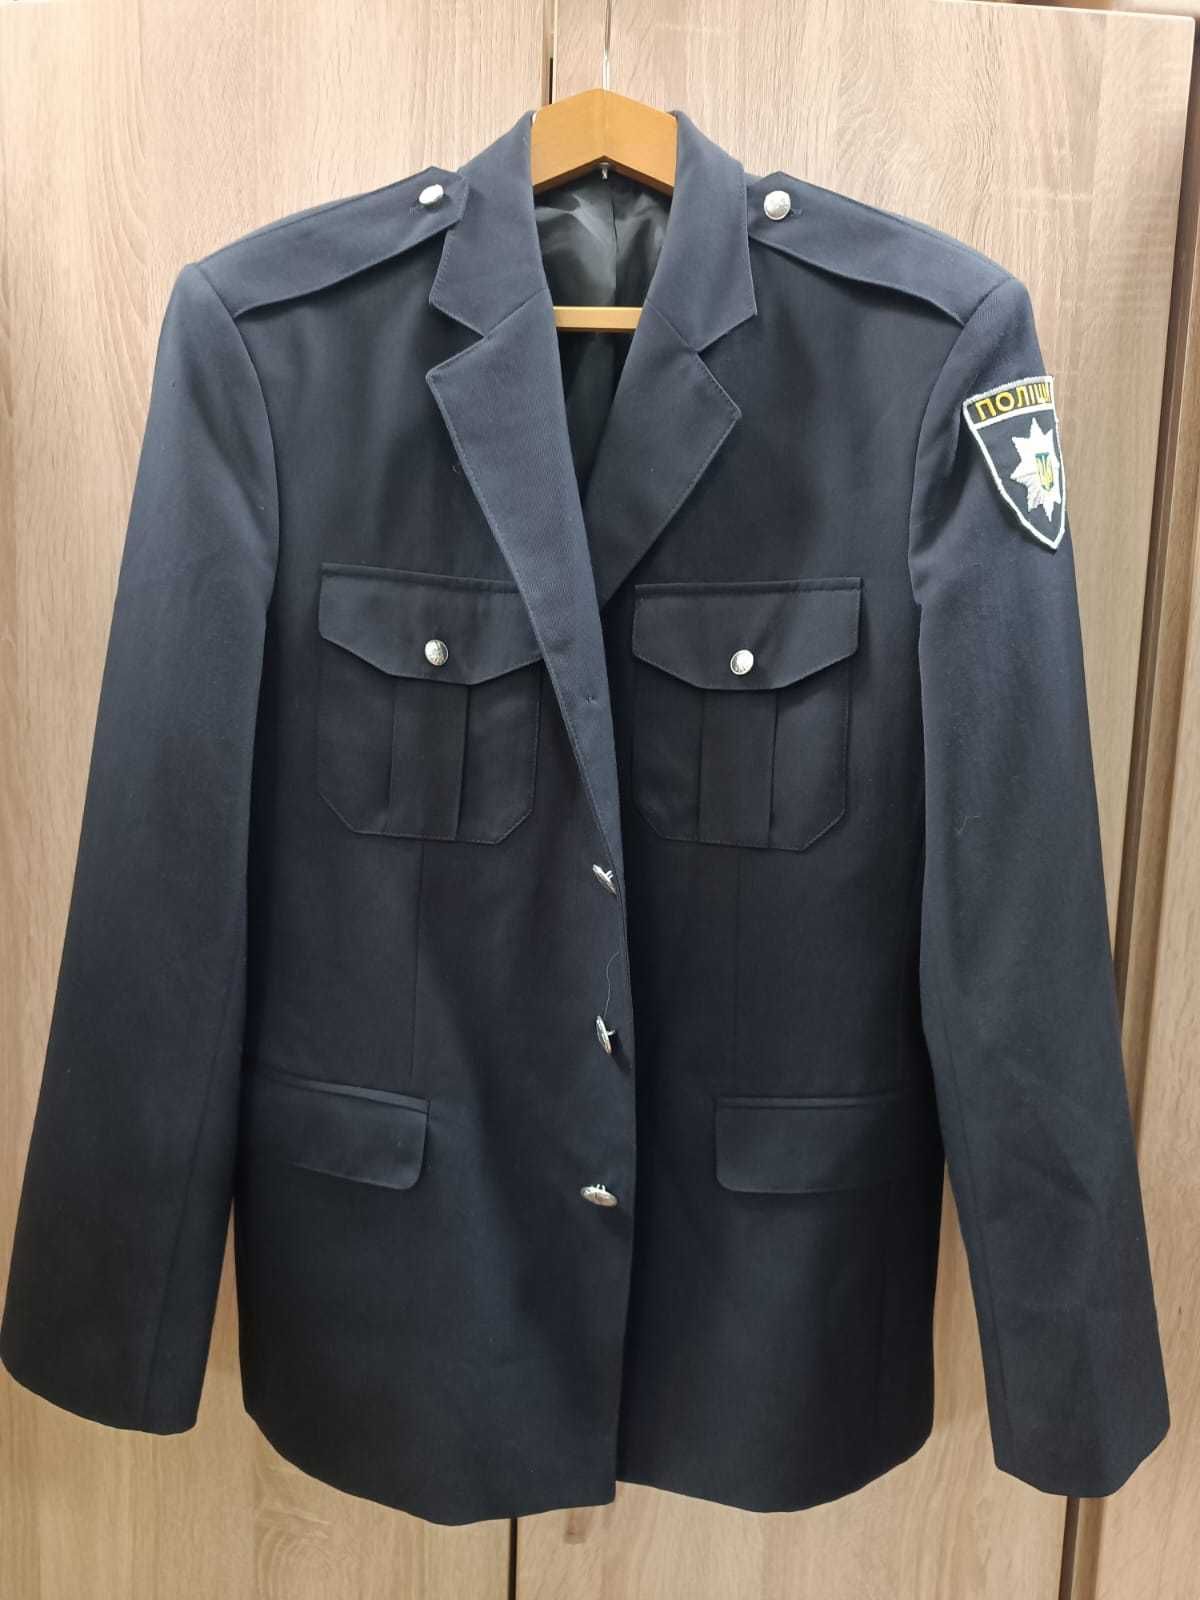 Парадна форма поліції нова кітель, брюки, рубашка.